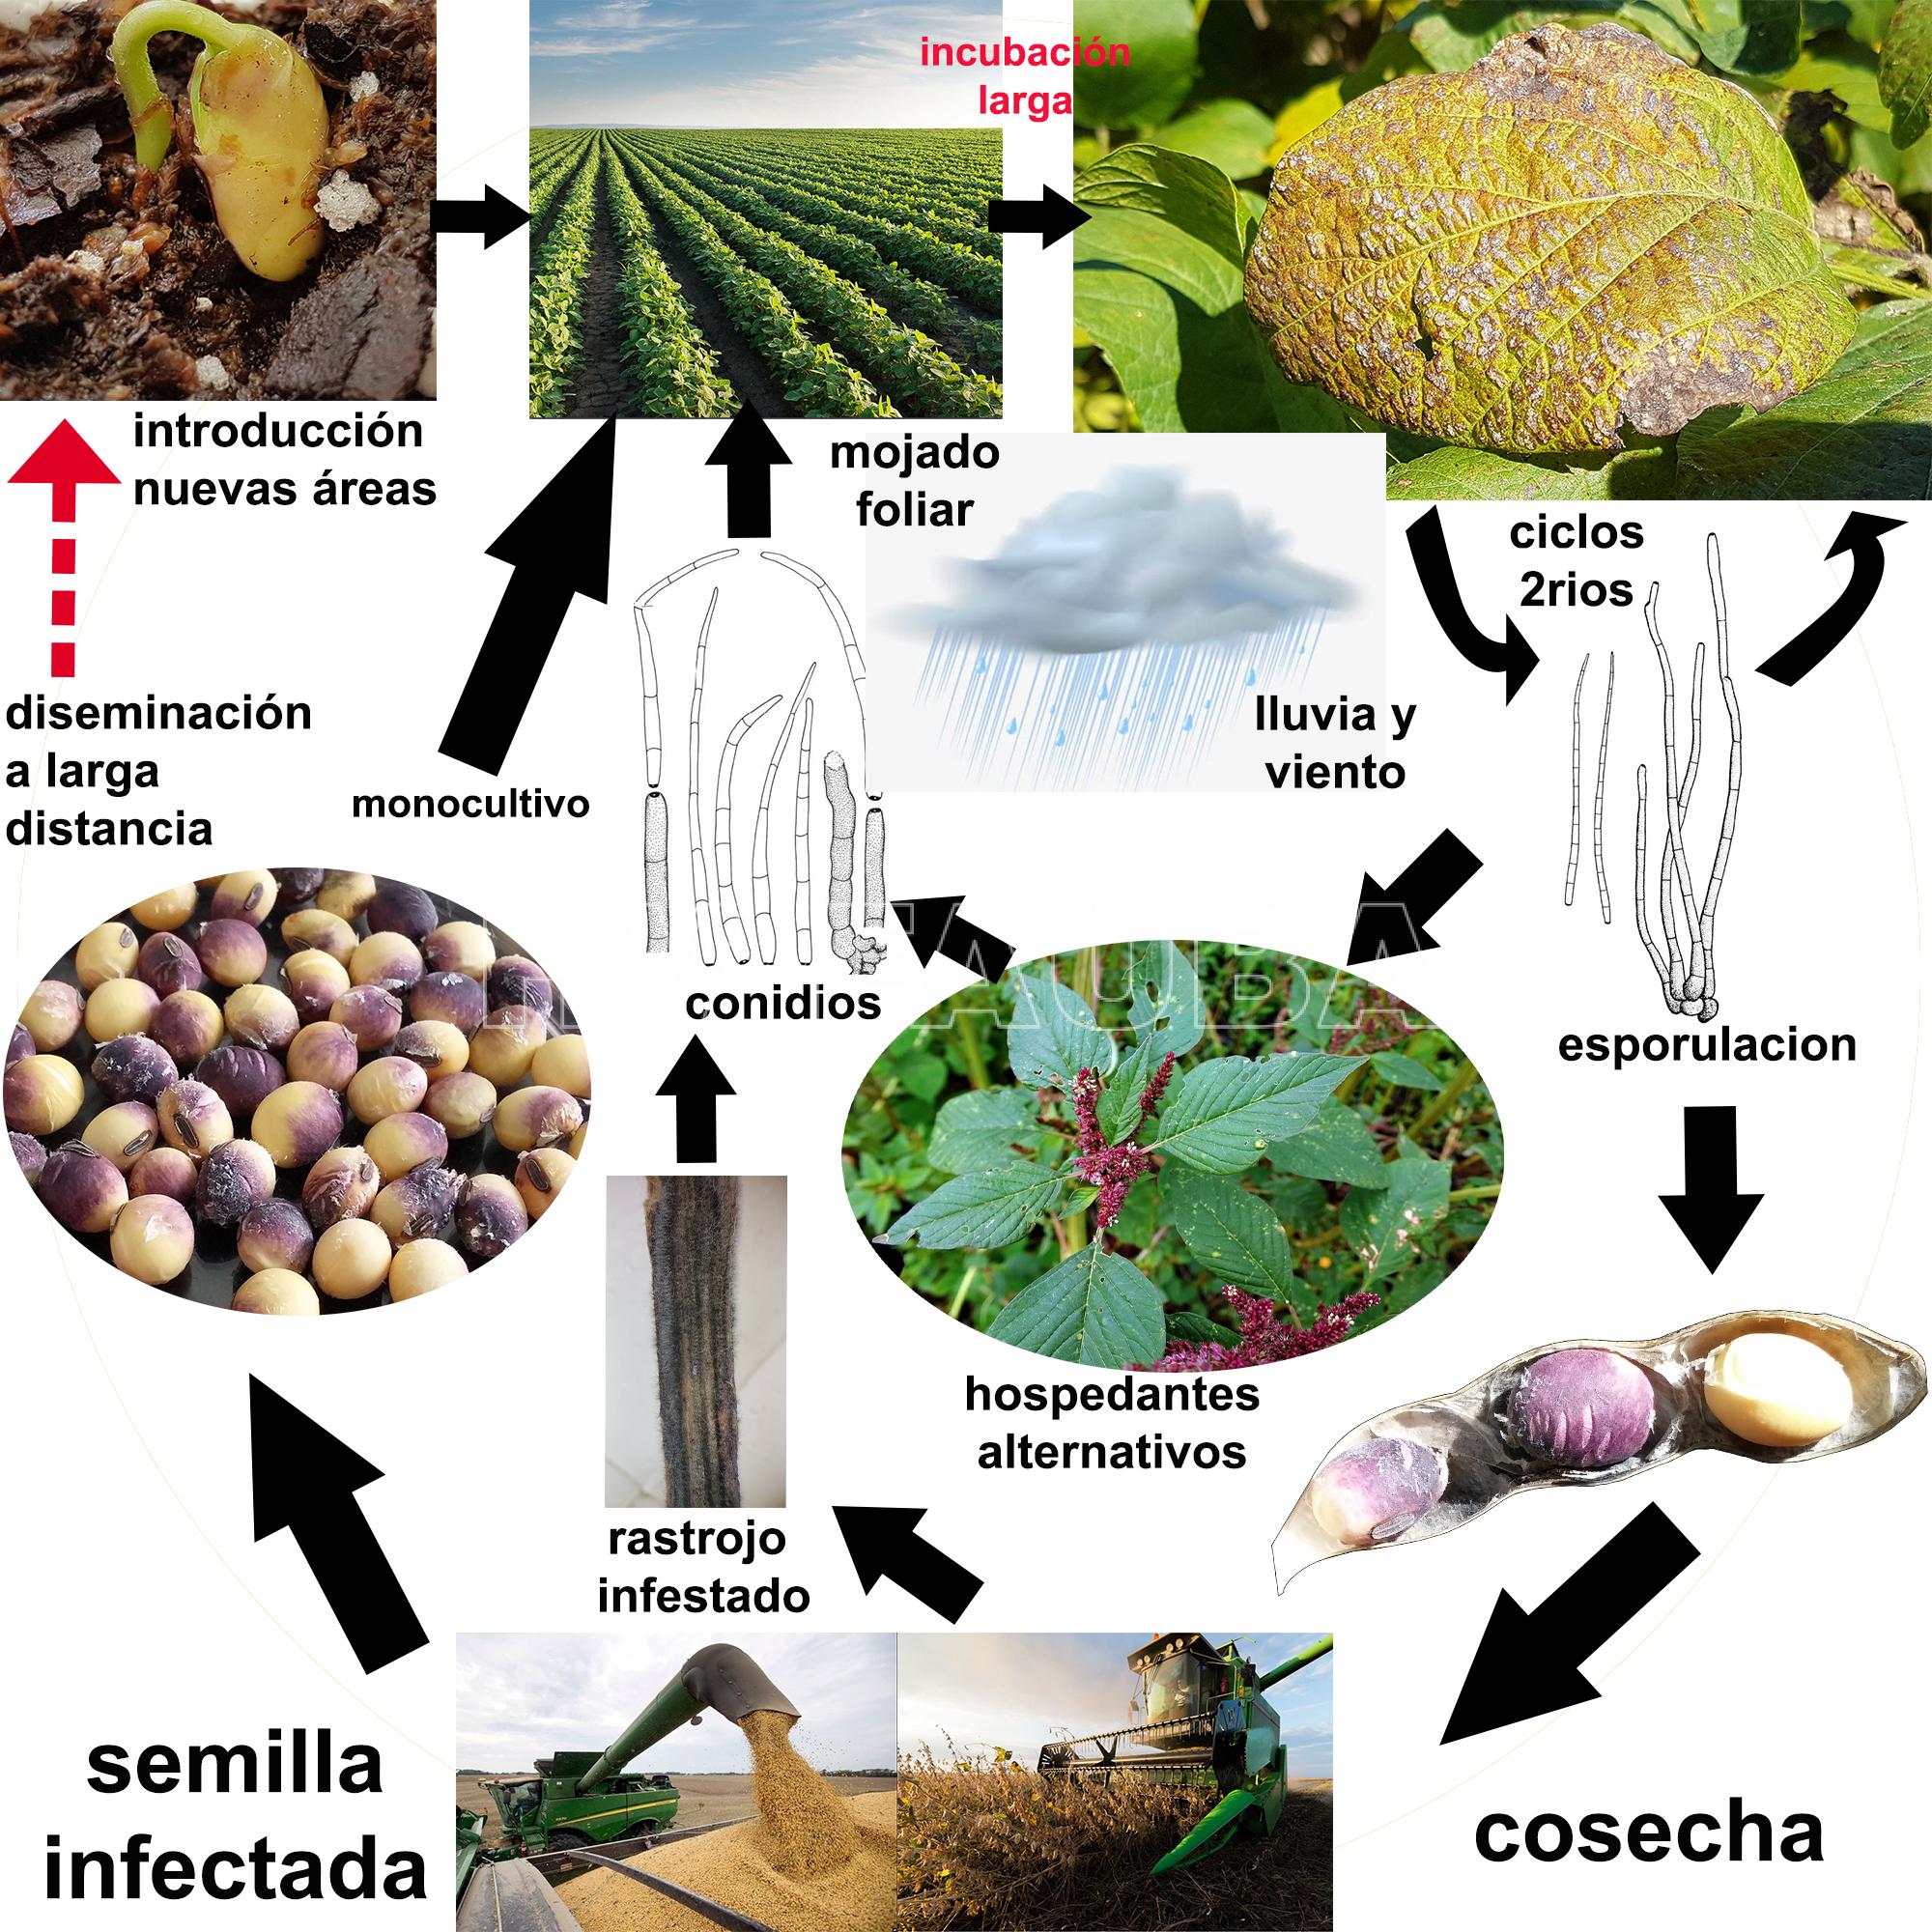 Ciclo del tizón foliar y mancha púrpura de la semilla de soja causado por Cercospora kikuchii. Autores: Sautua, Scandiani, Carmona, 2021